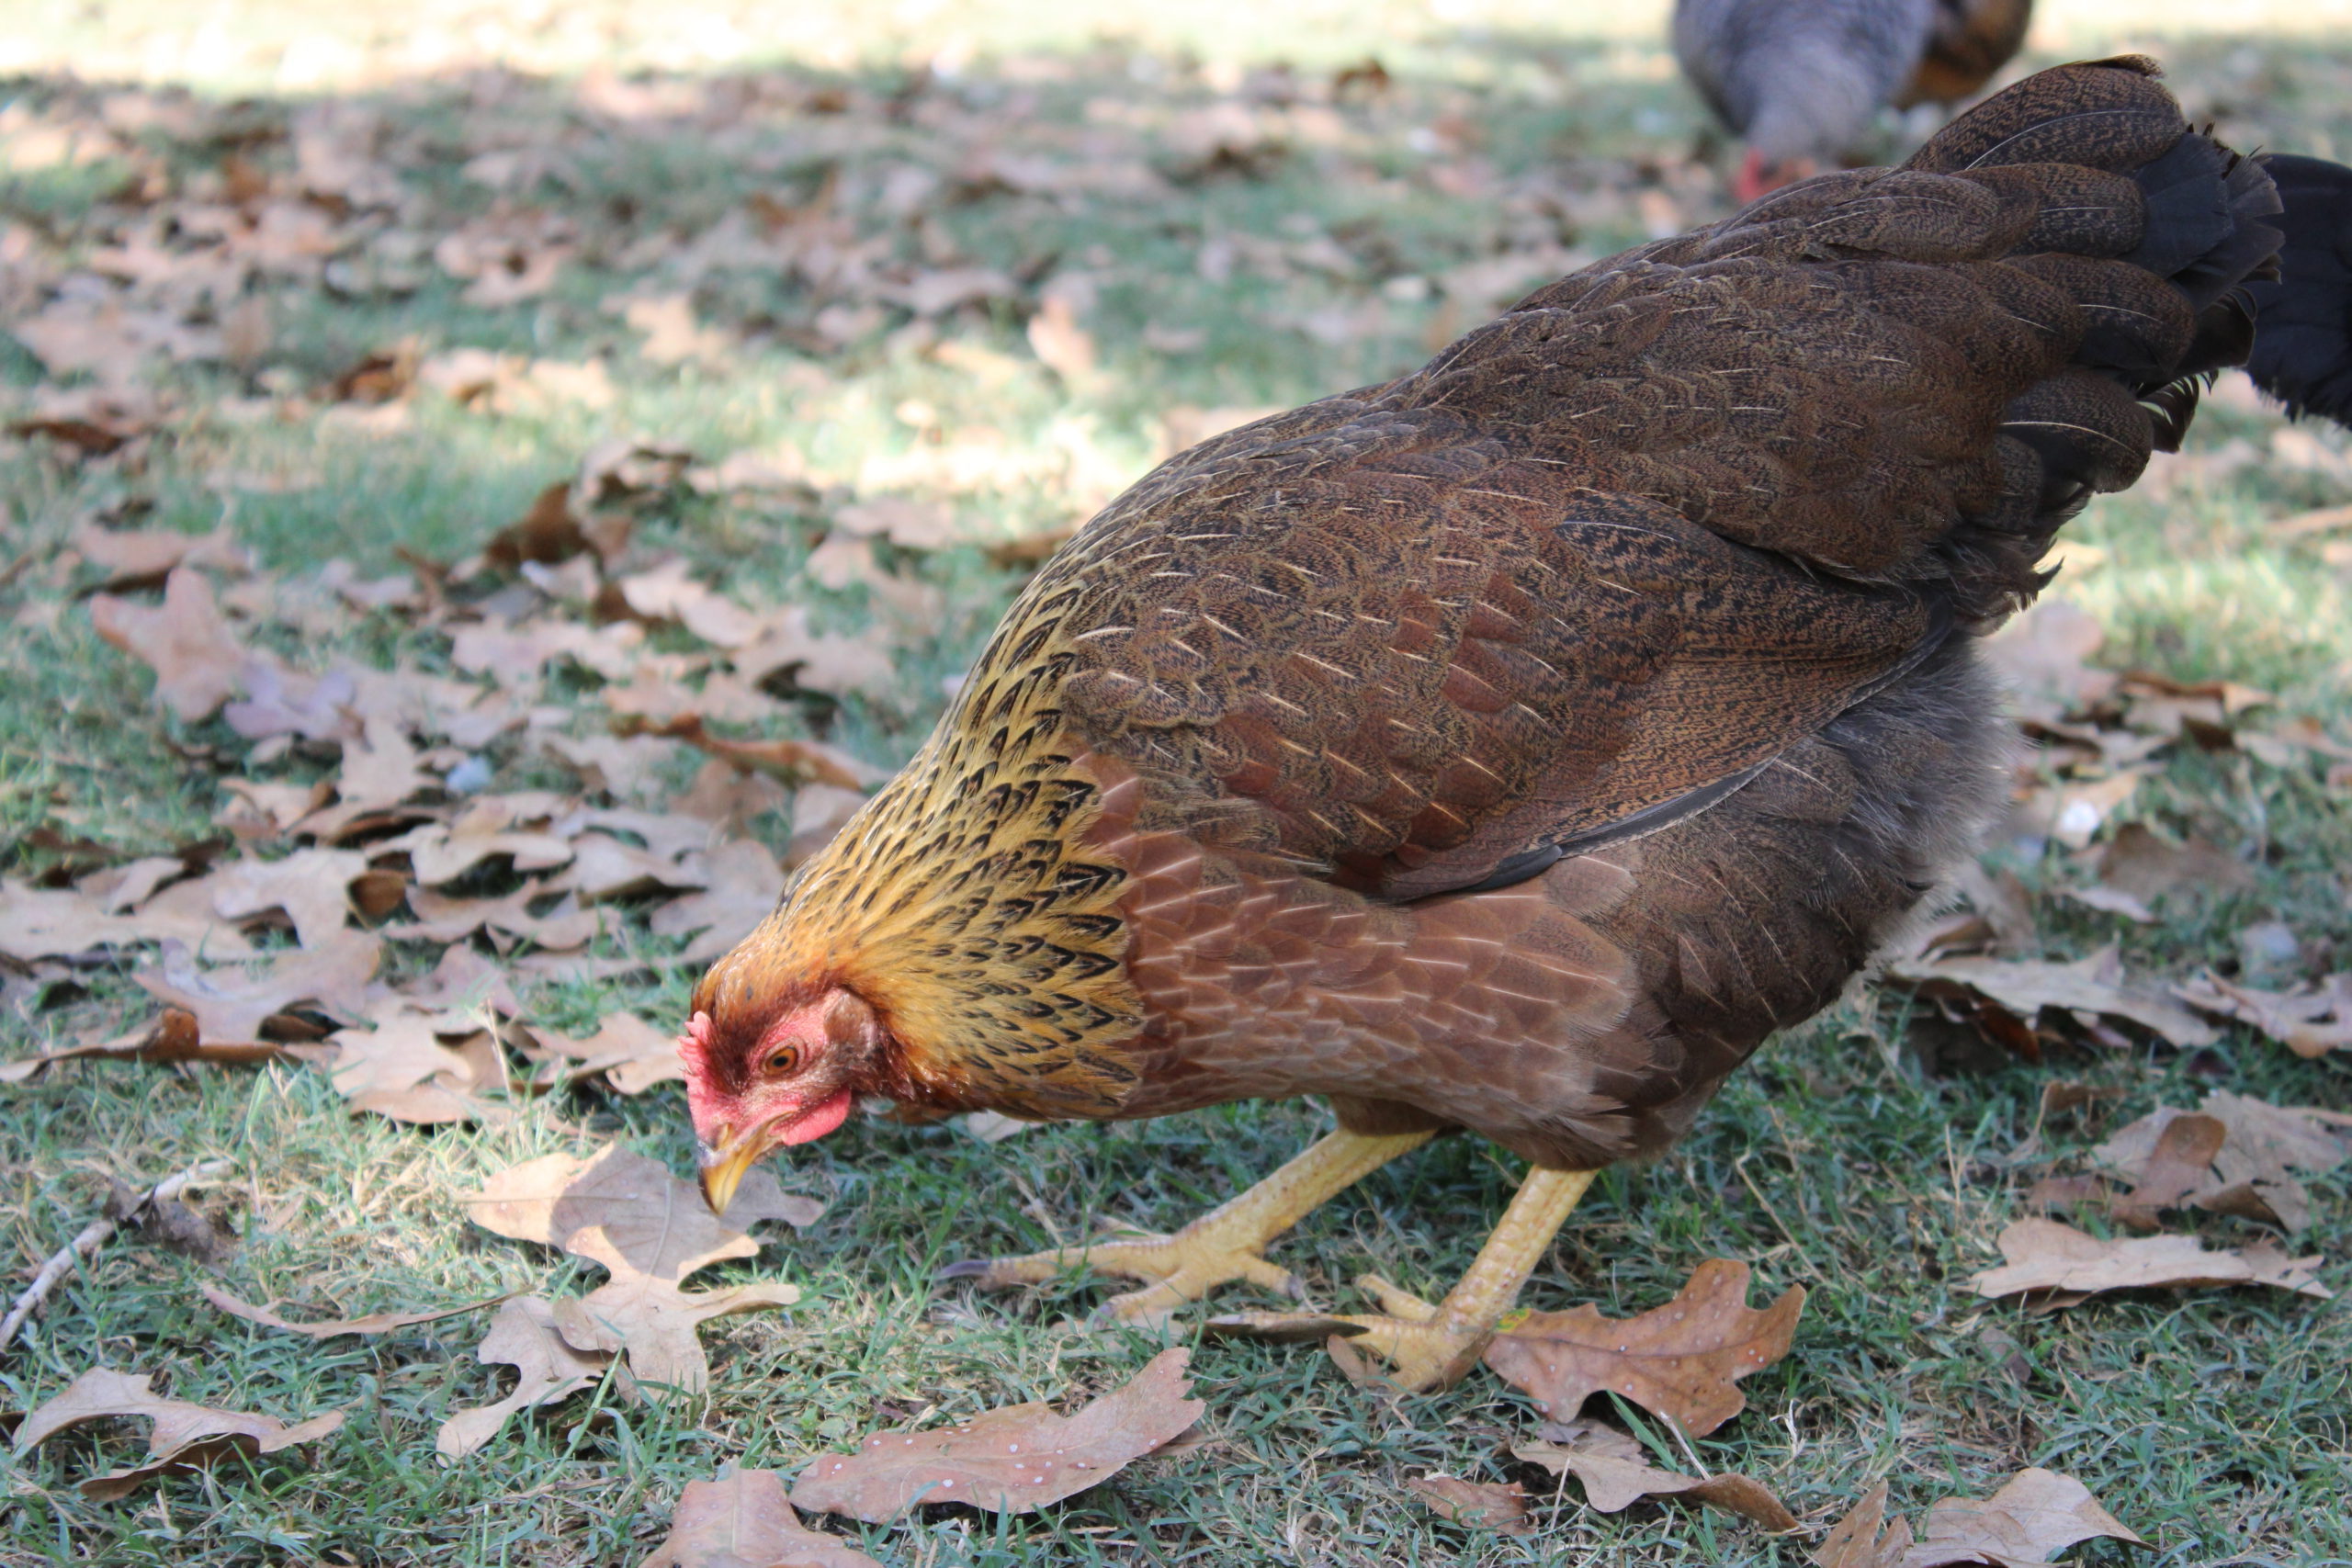 Brahma • Insteading Chicken Breeds Guide